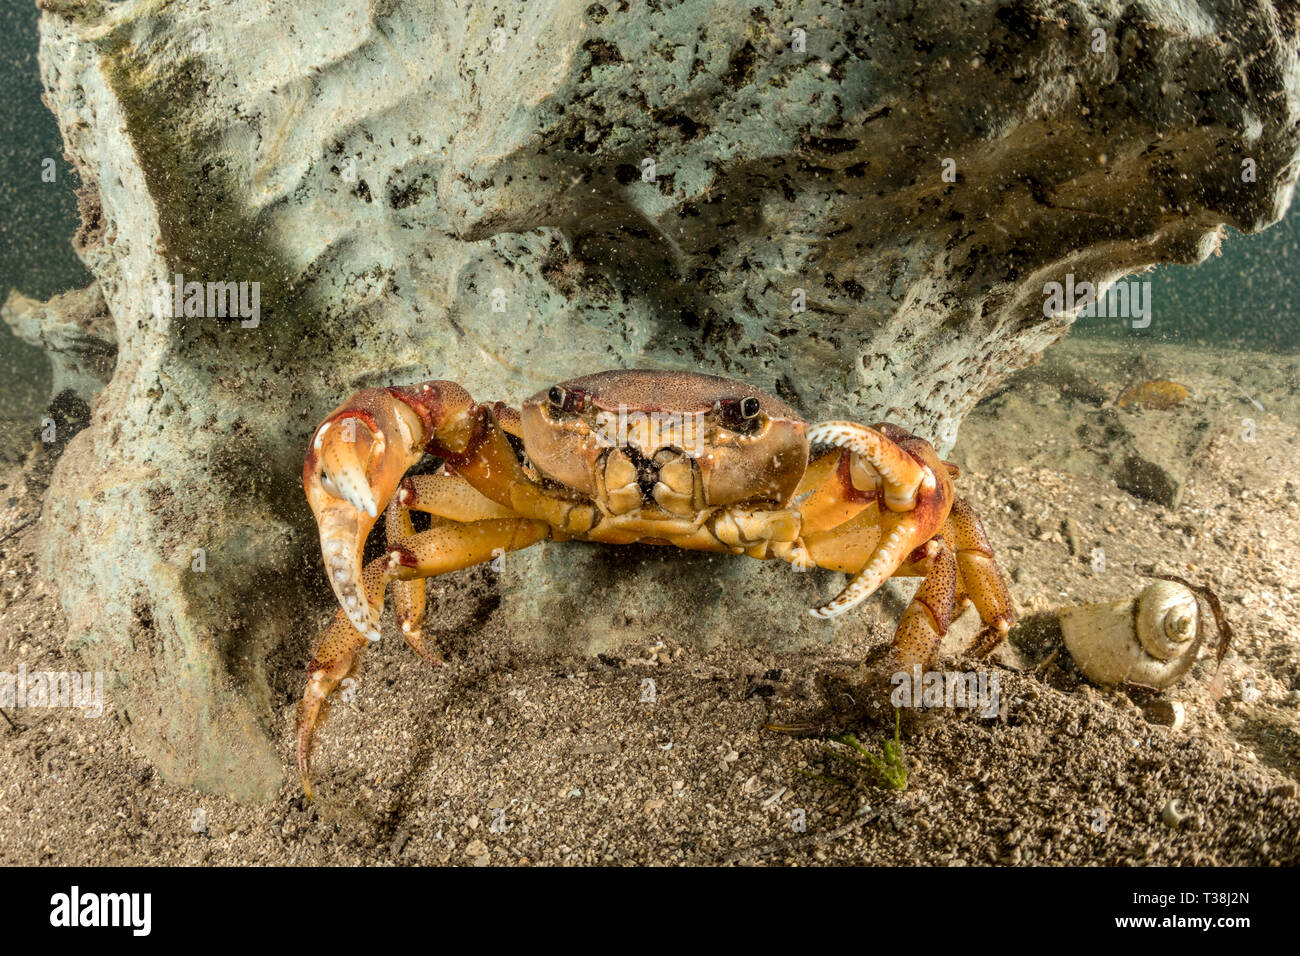 Crabe d'eau douce, Sylviocarcinus australis, rivière Formoso, bonite, Mato Grosso do Sul, Brésil Banque D'Images